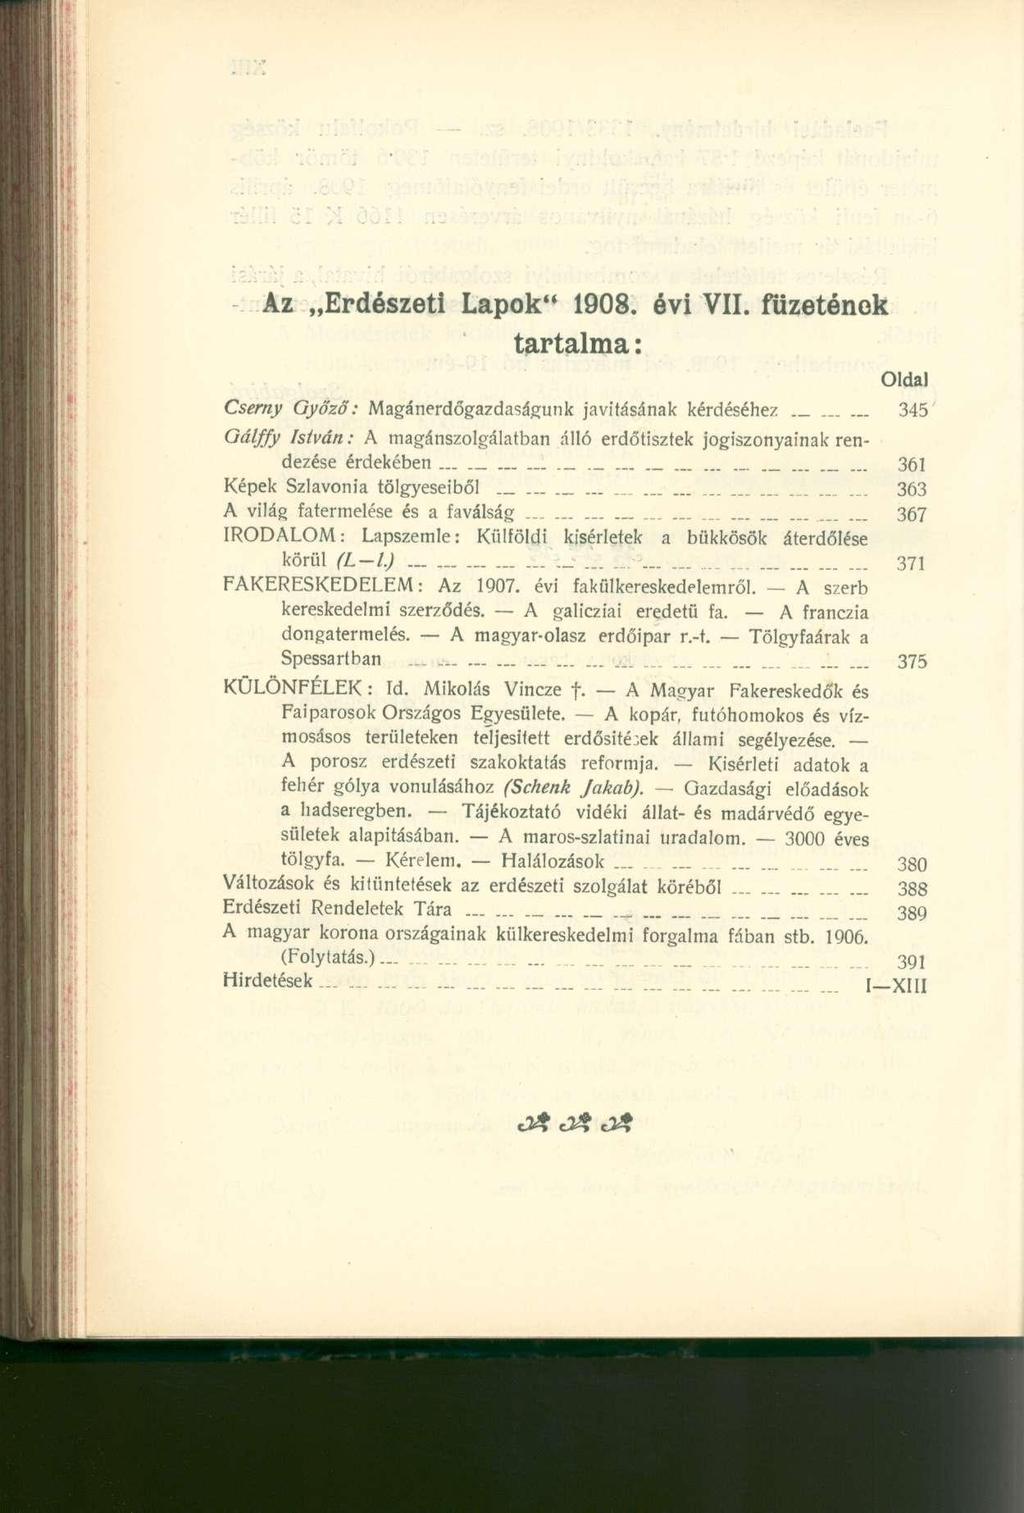 Az Erdészeti Lapok" 1908. évi VII. füzetónok tartalma: Oldal Cserny Győzd: Magánerdőgazdaságunk javításának kérdéséhez.